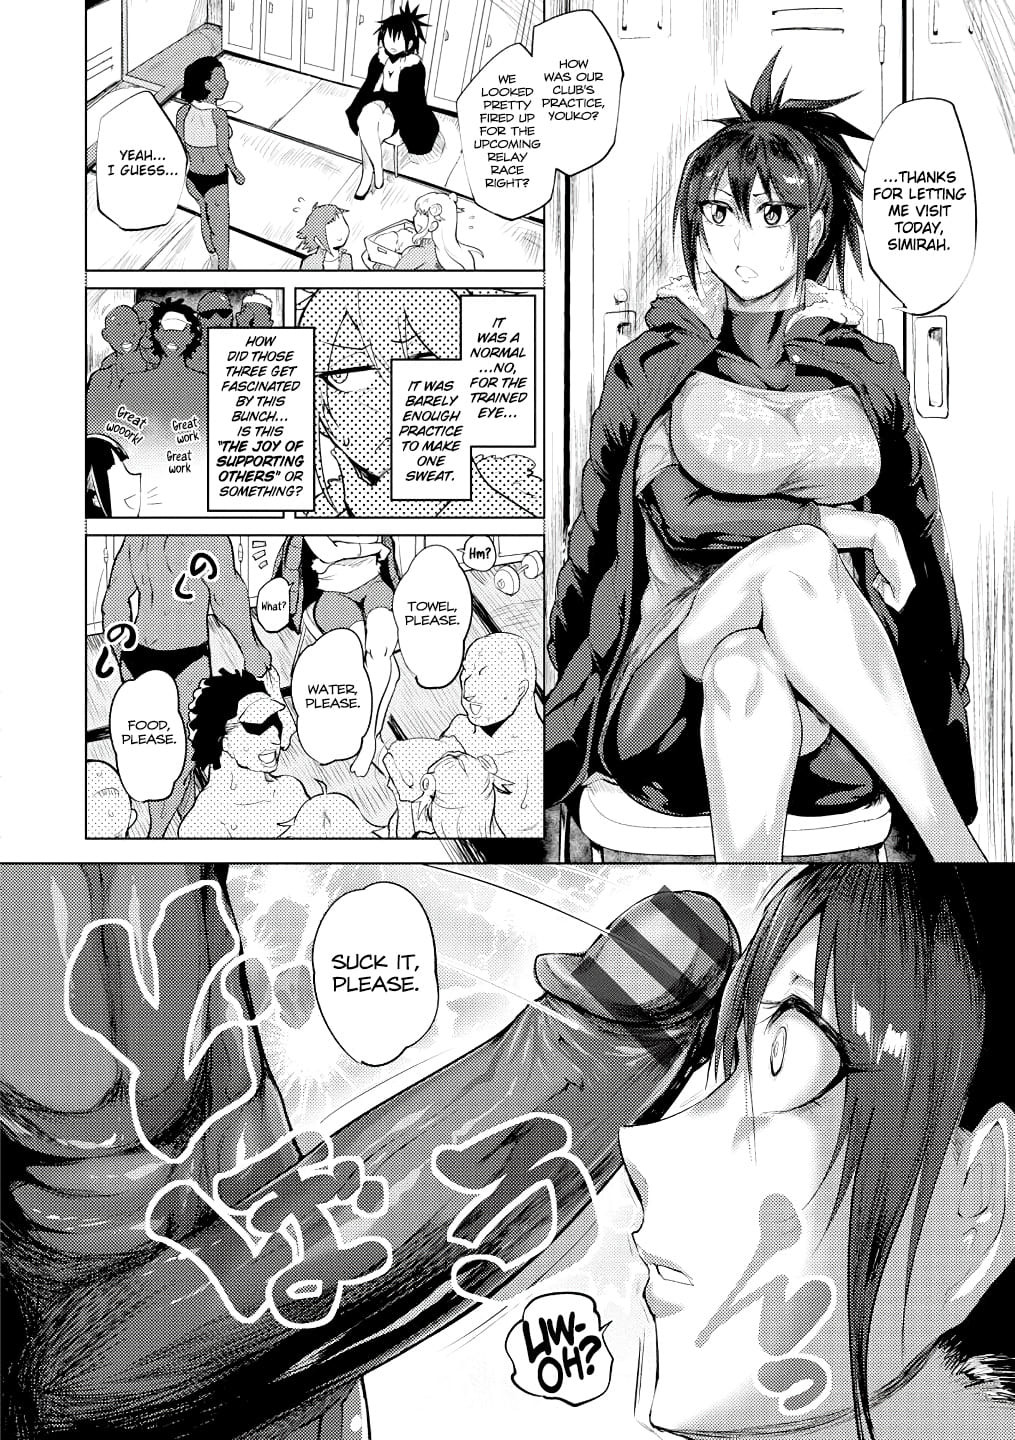 Huge cock hentai manga